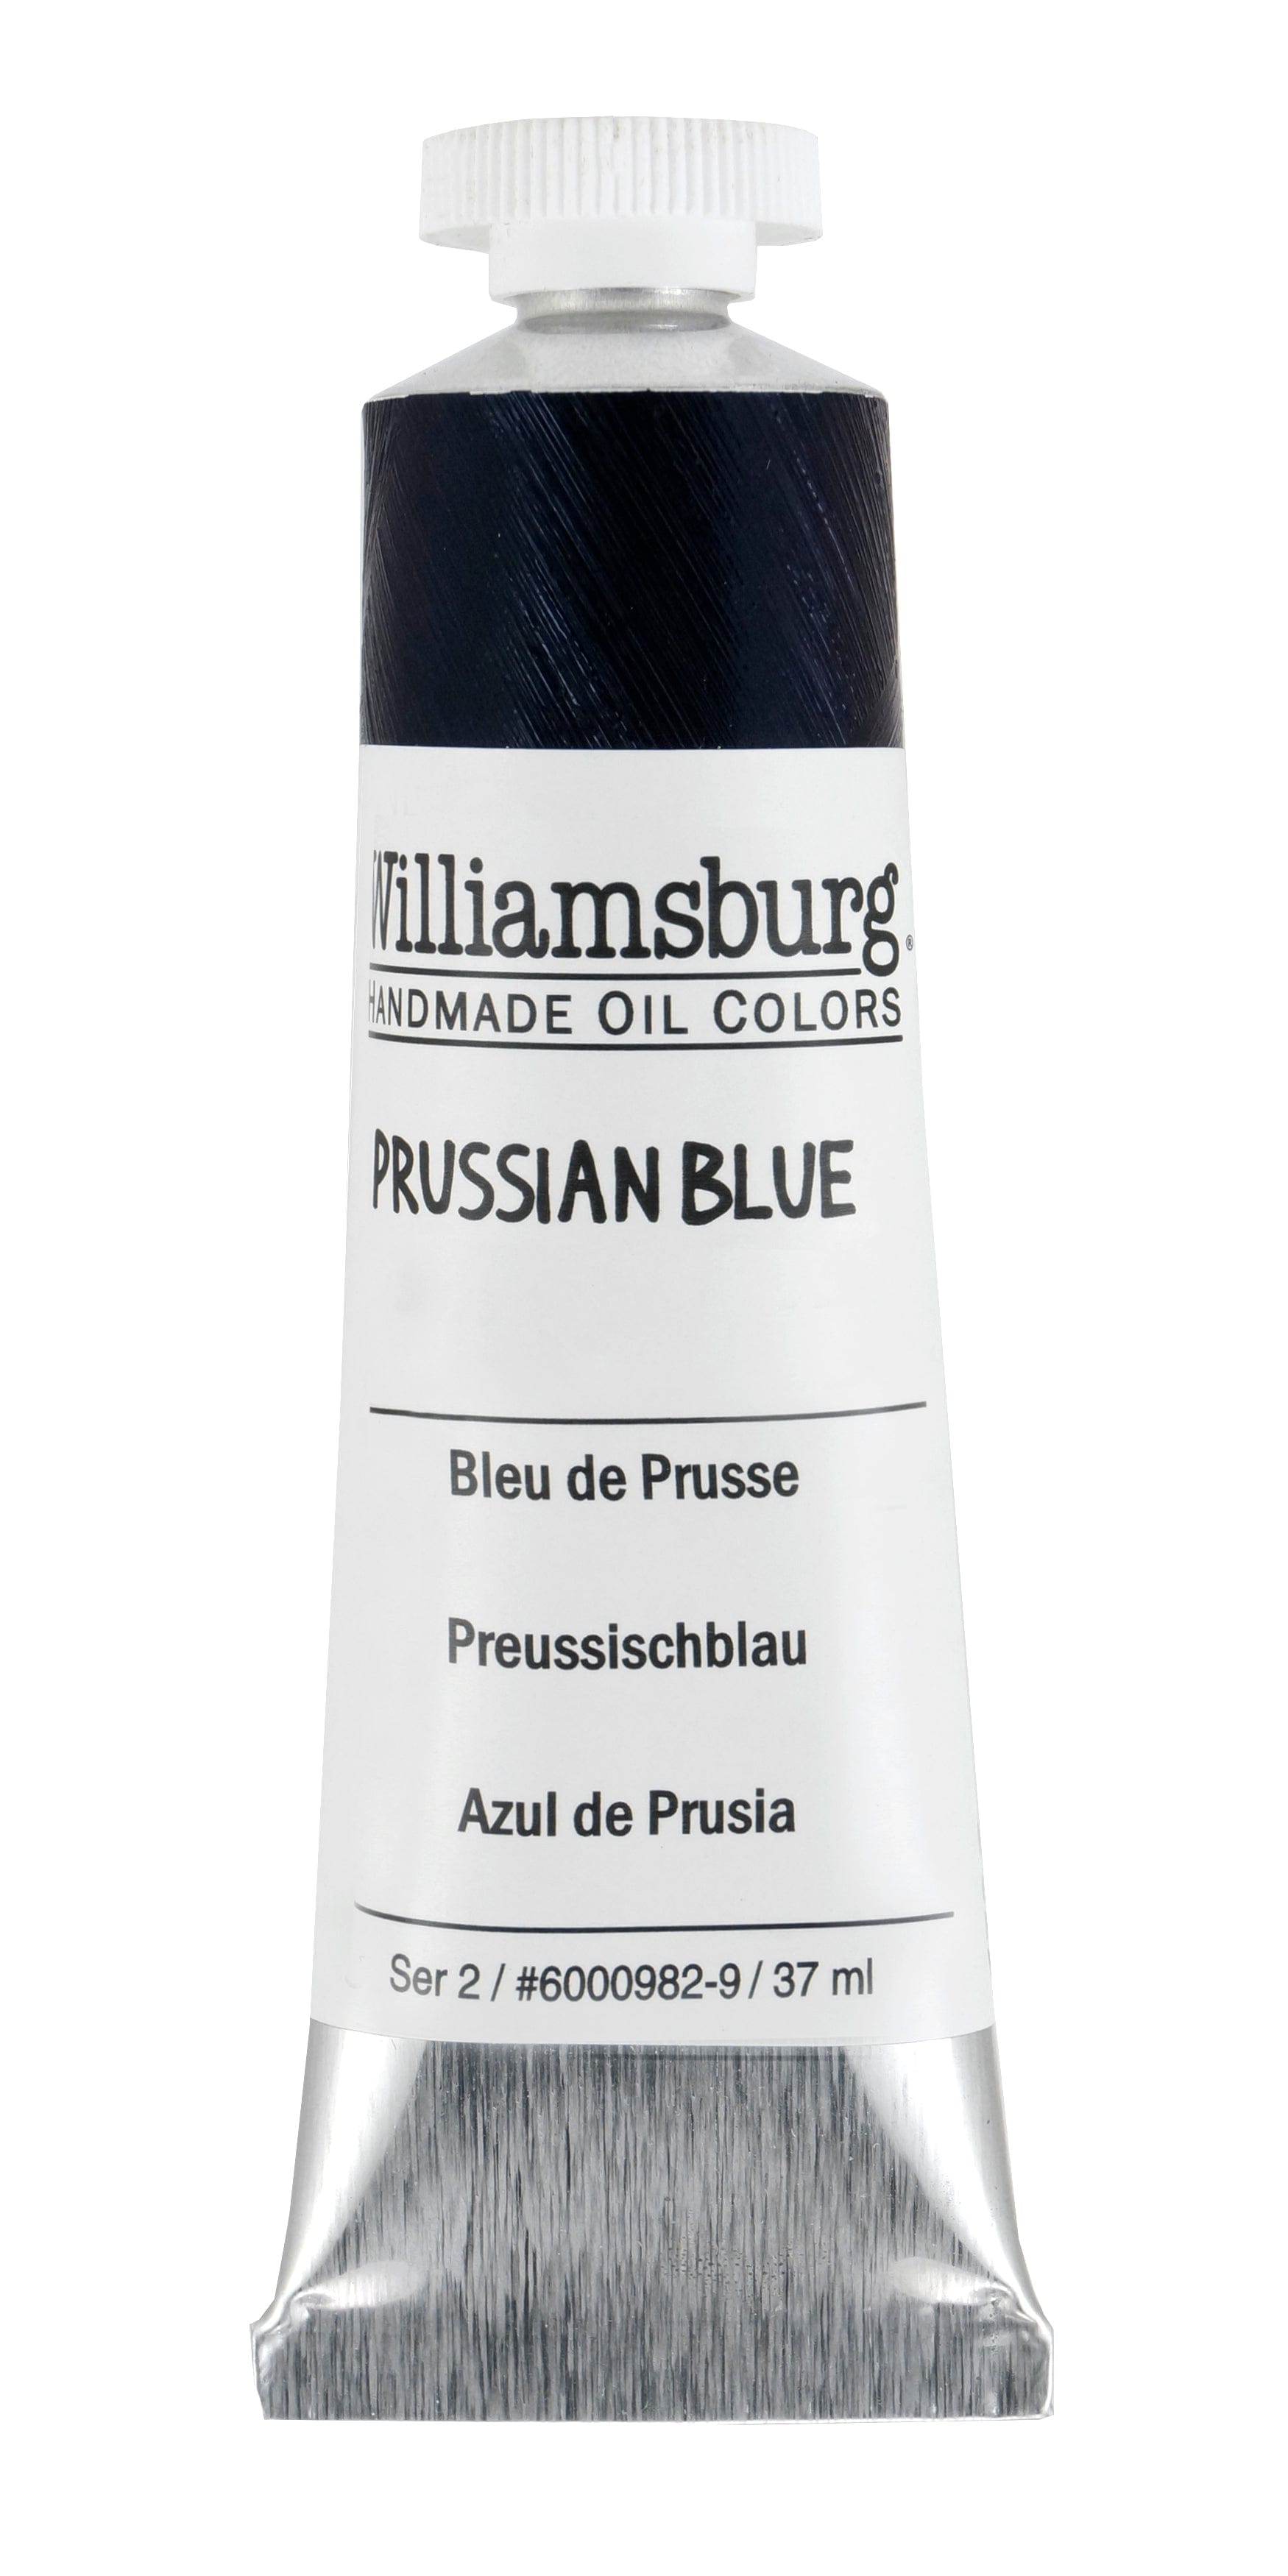 Williamsburg Oliemaling Prussian Blue